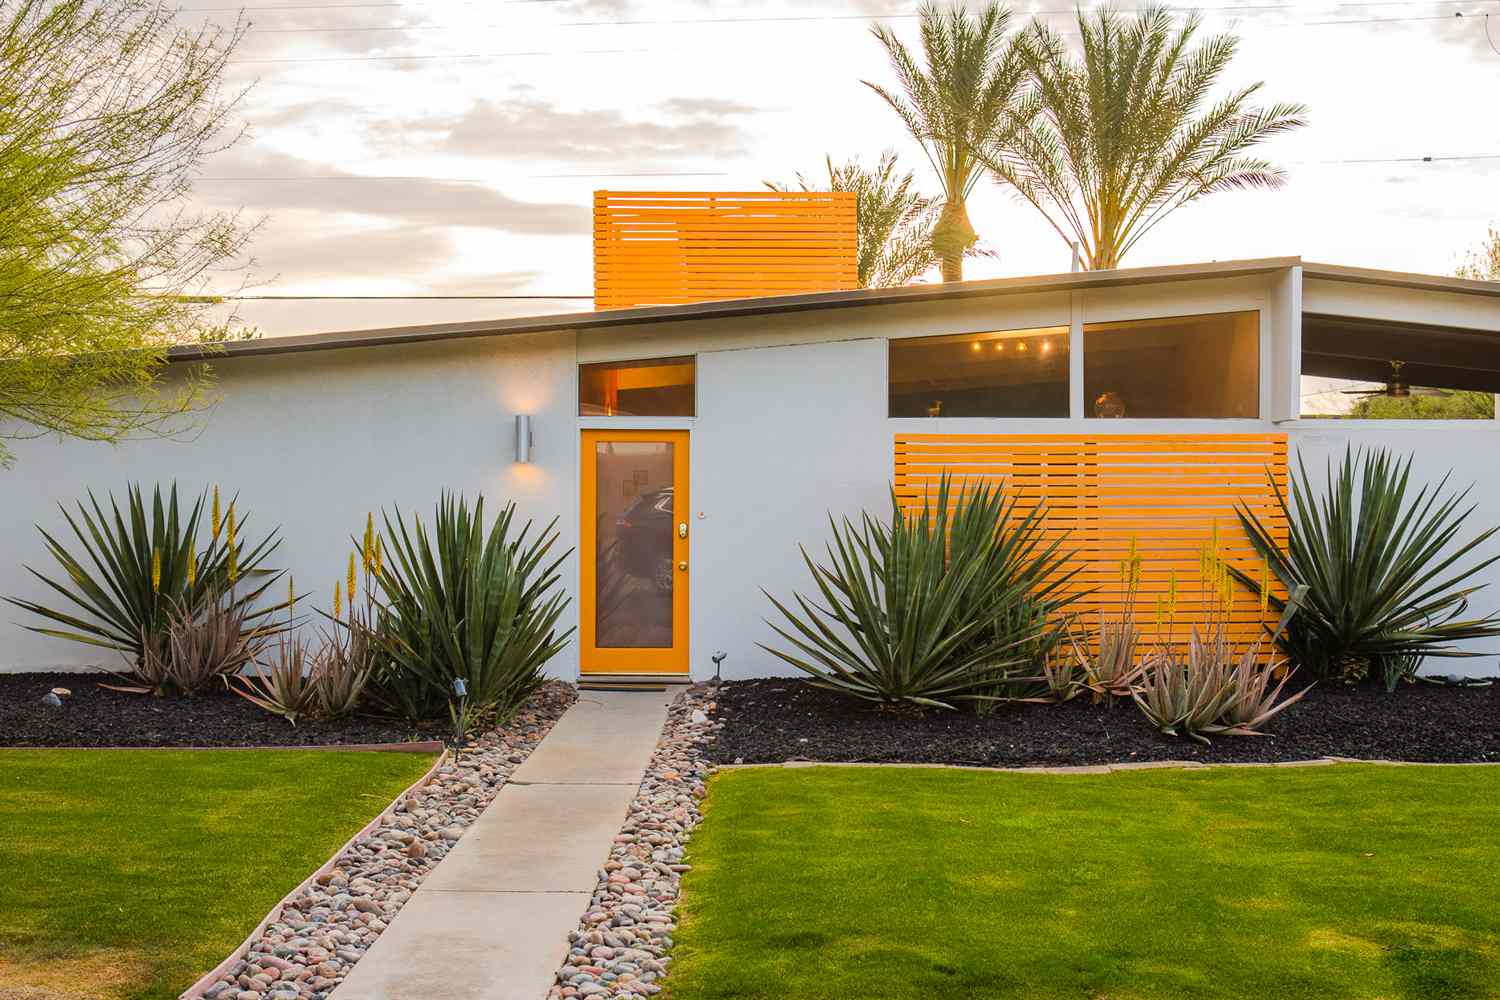 Casa moderna com linhas elegantes de portas e separadores pintados de laranja